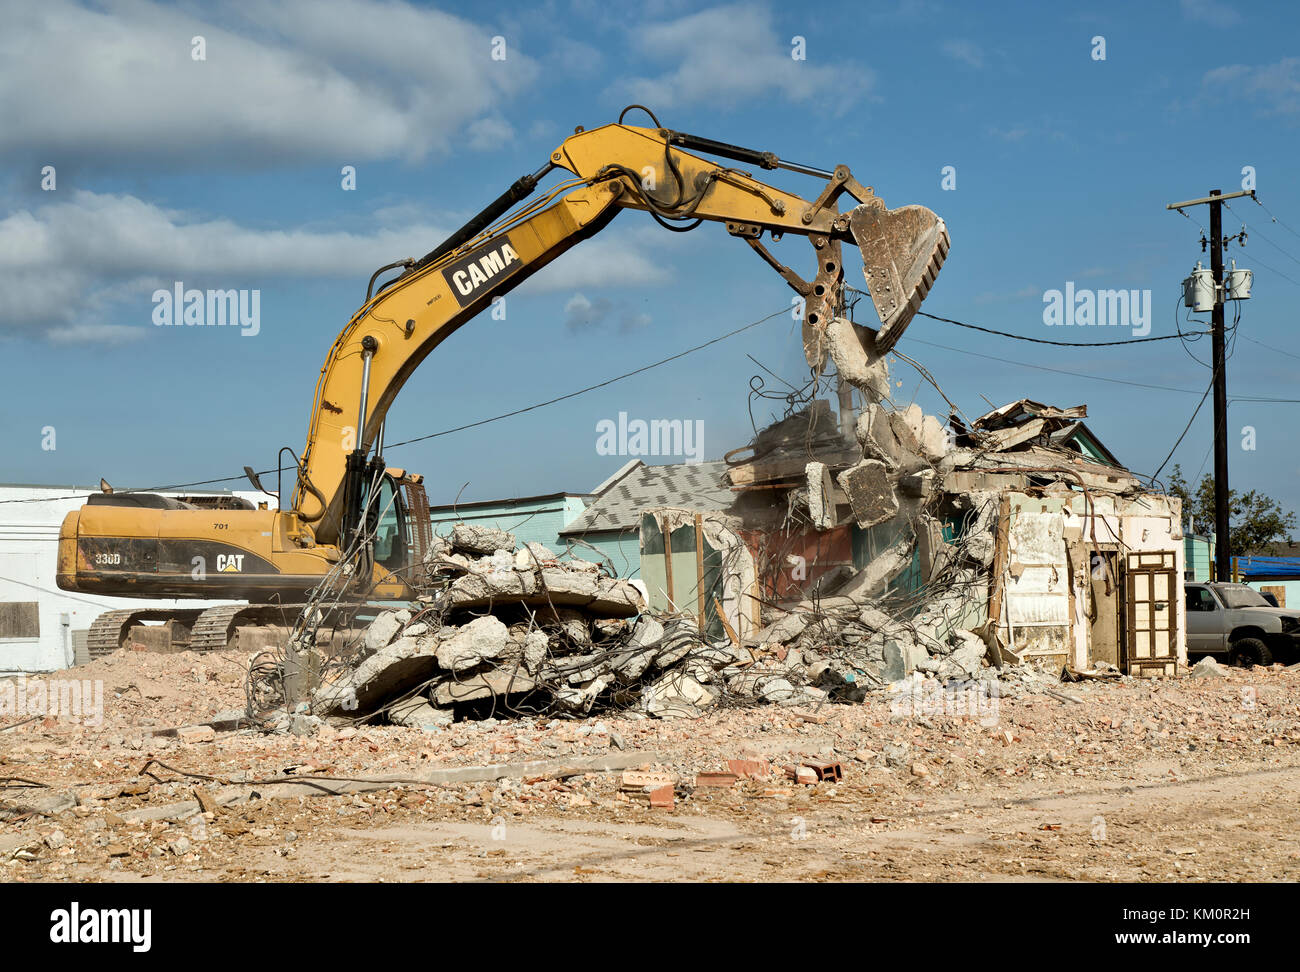 Caterpillar 330dl pelle hydraulique, faire pivoter la flèche, le nettoyage de l'ancien détruit structure résultant de l'ouragan Harvey 2017. Banque D'Images